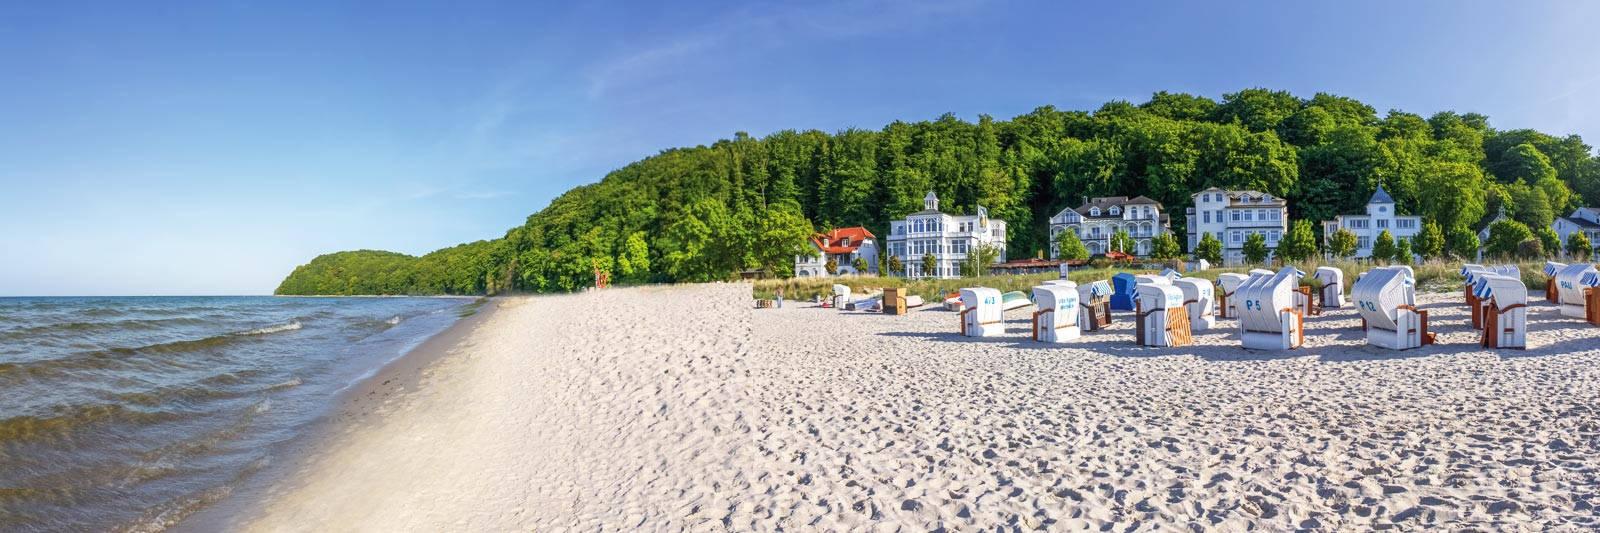 75 Ferienwohnungen und Ferienhäuser in Bollewick - tourist-online.de